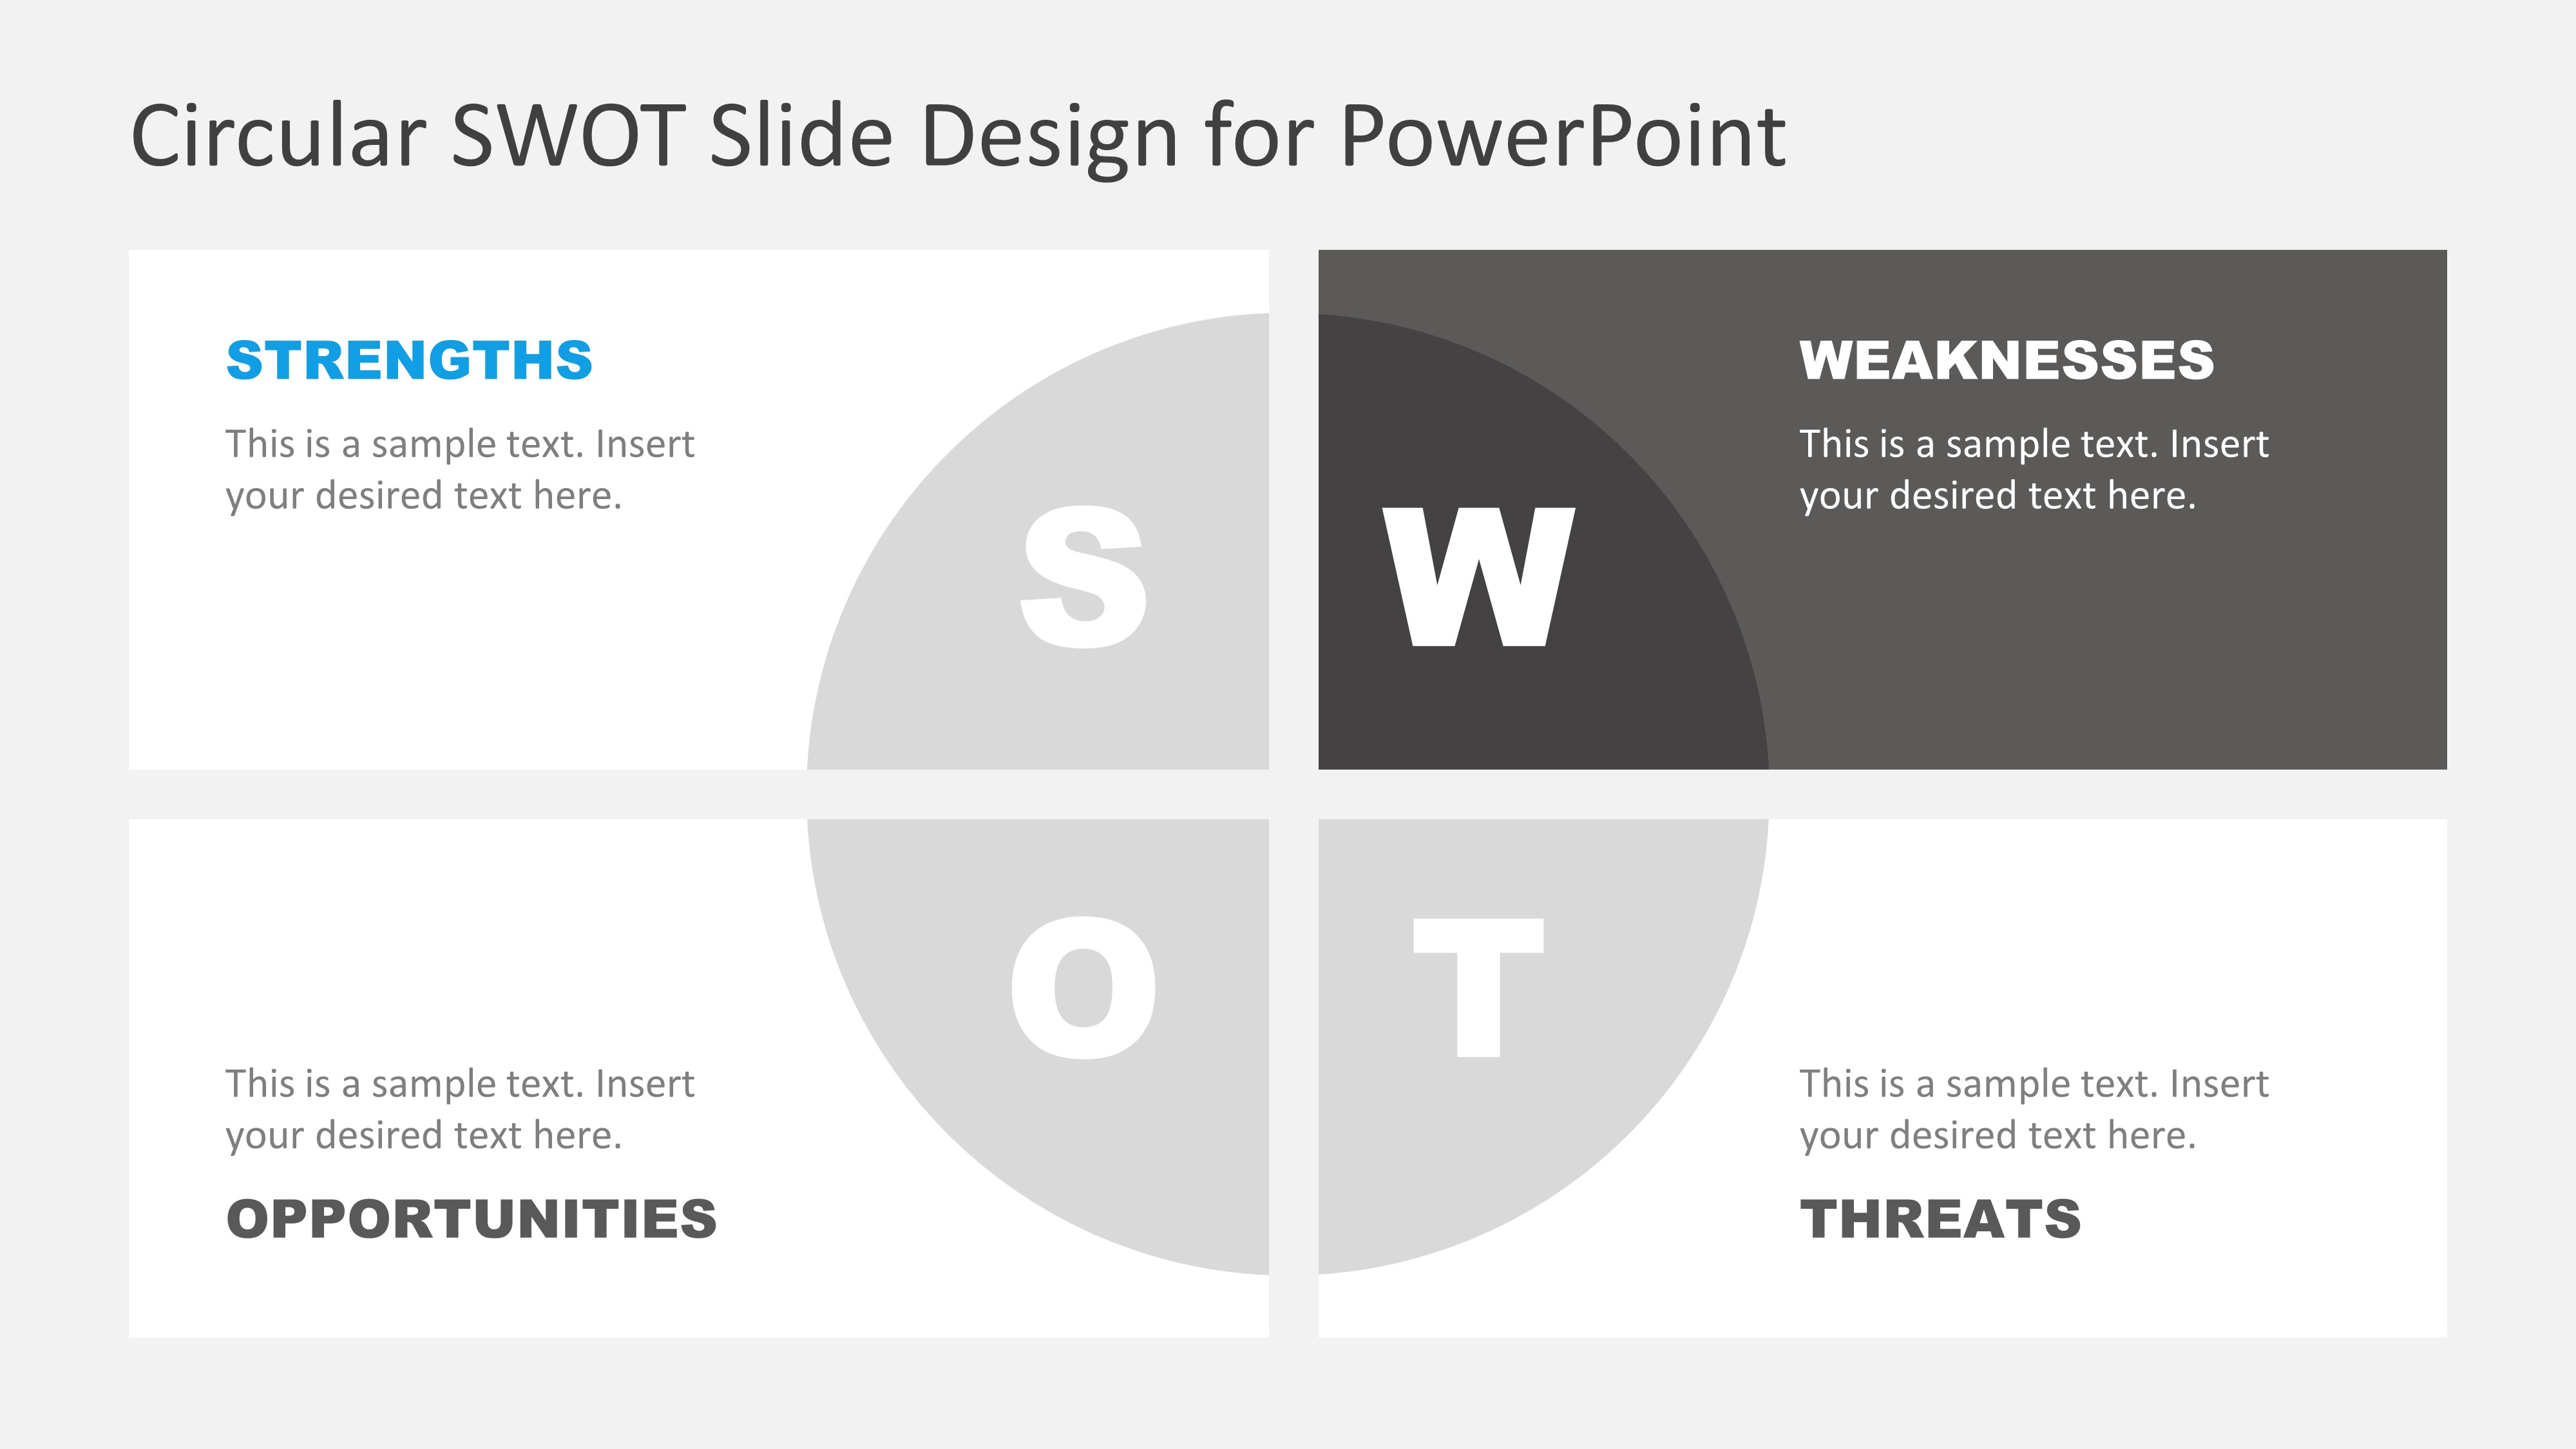 Weaknesses in SWOT Concept Model